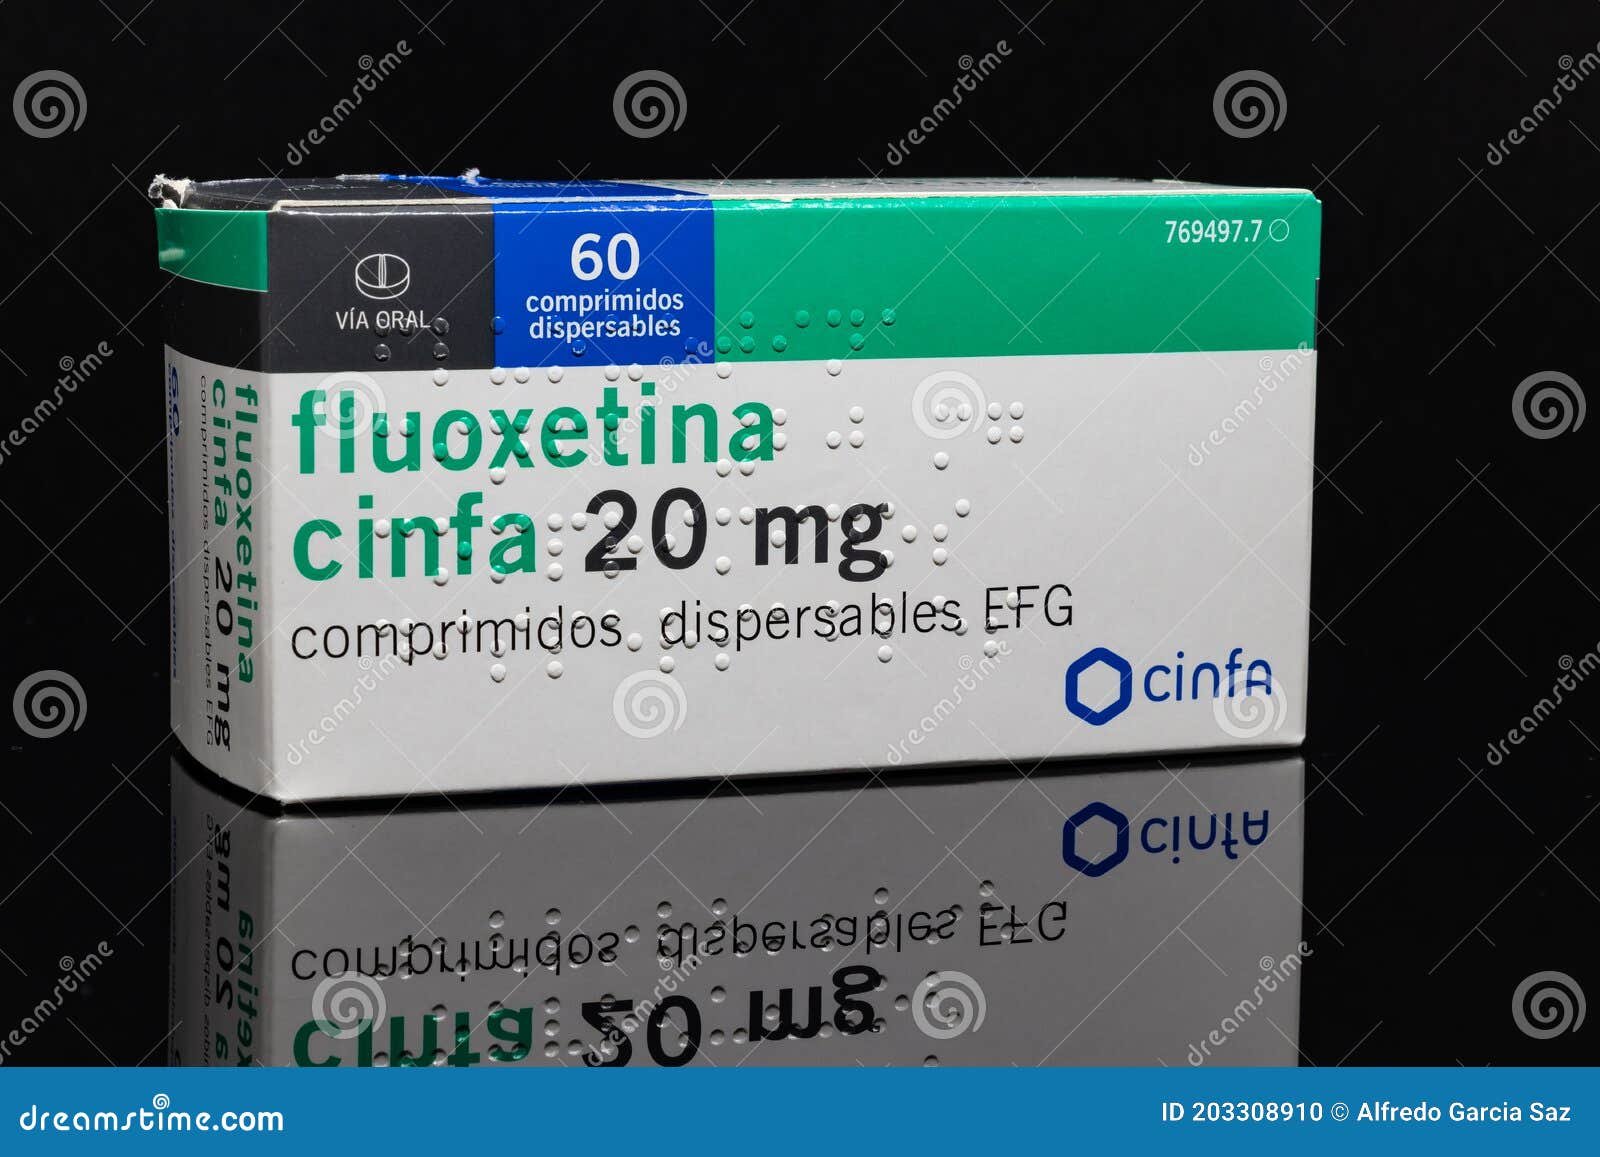 Daforin 20mg com 60 comprimidos - Ems